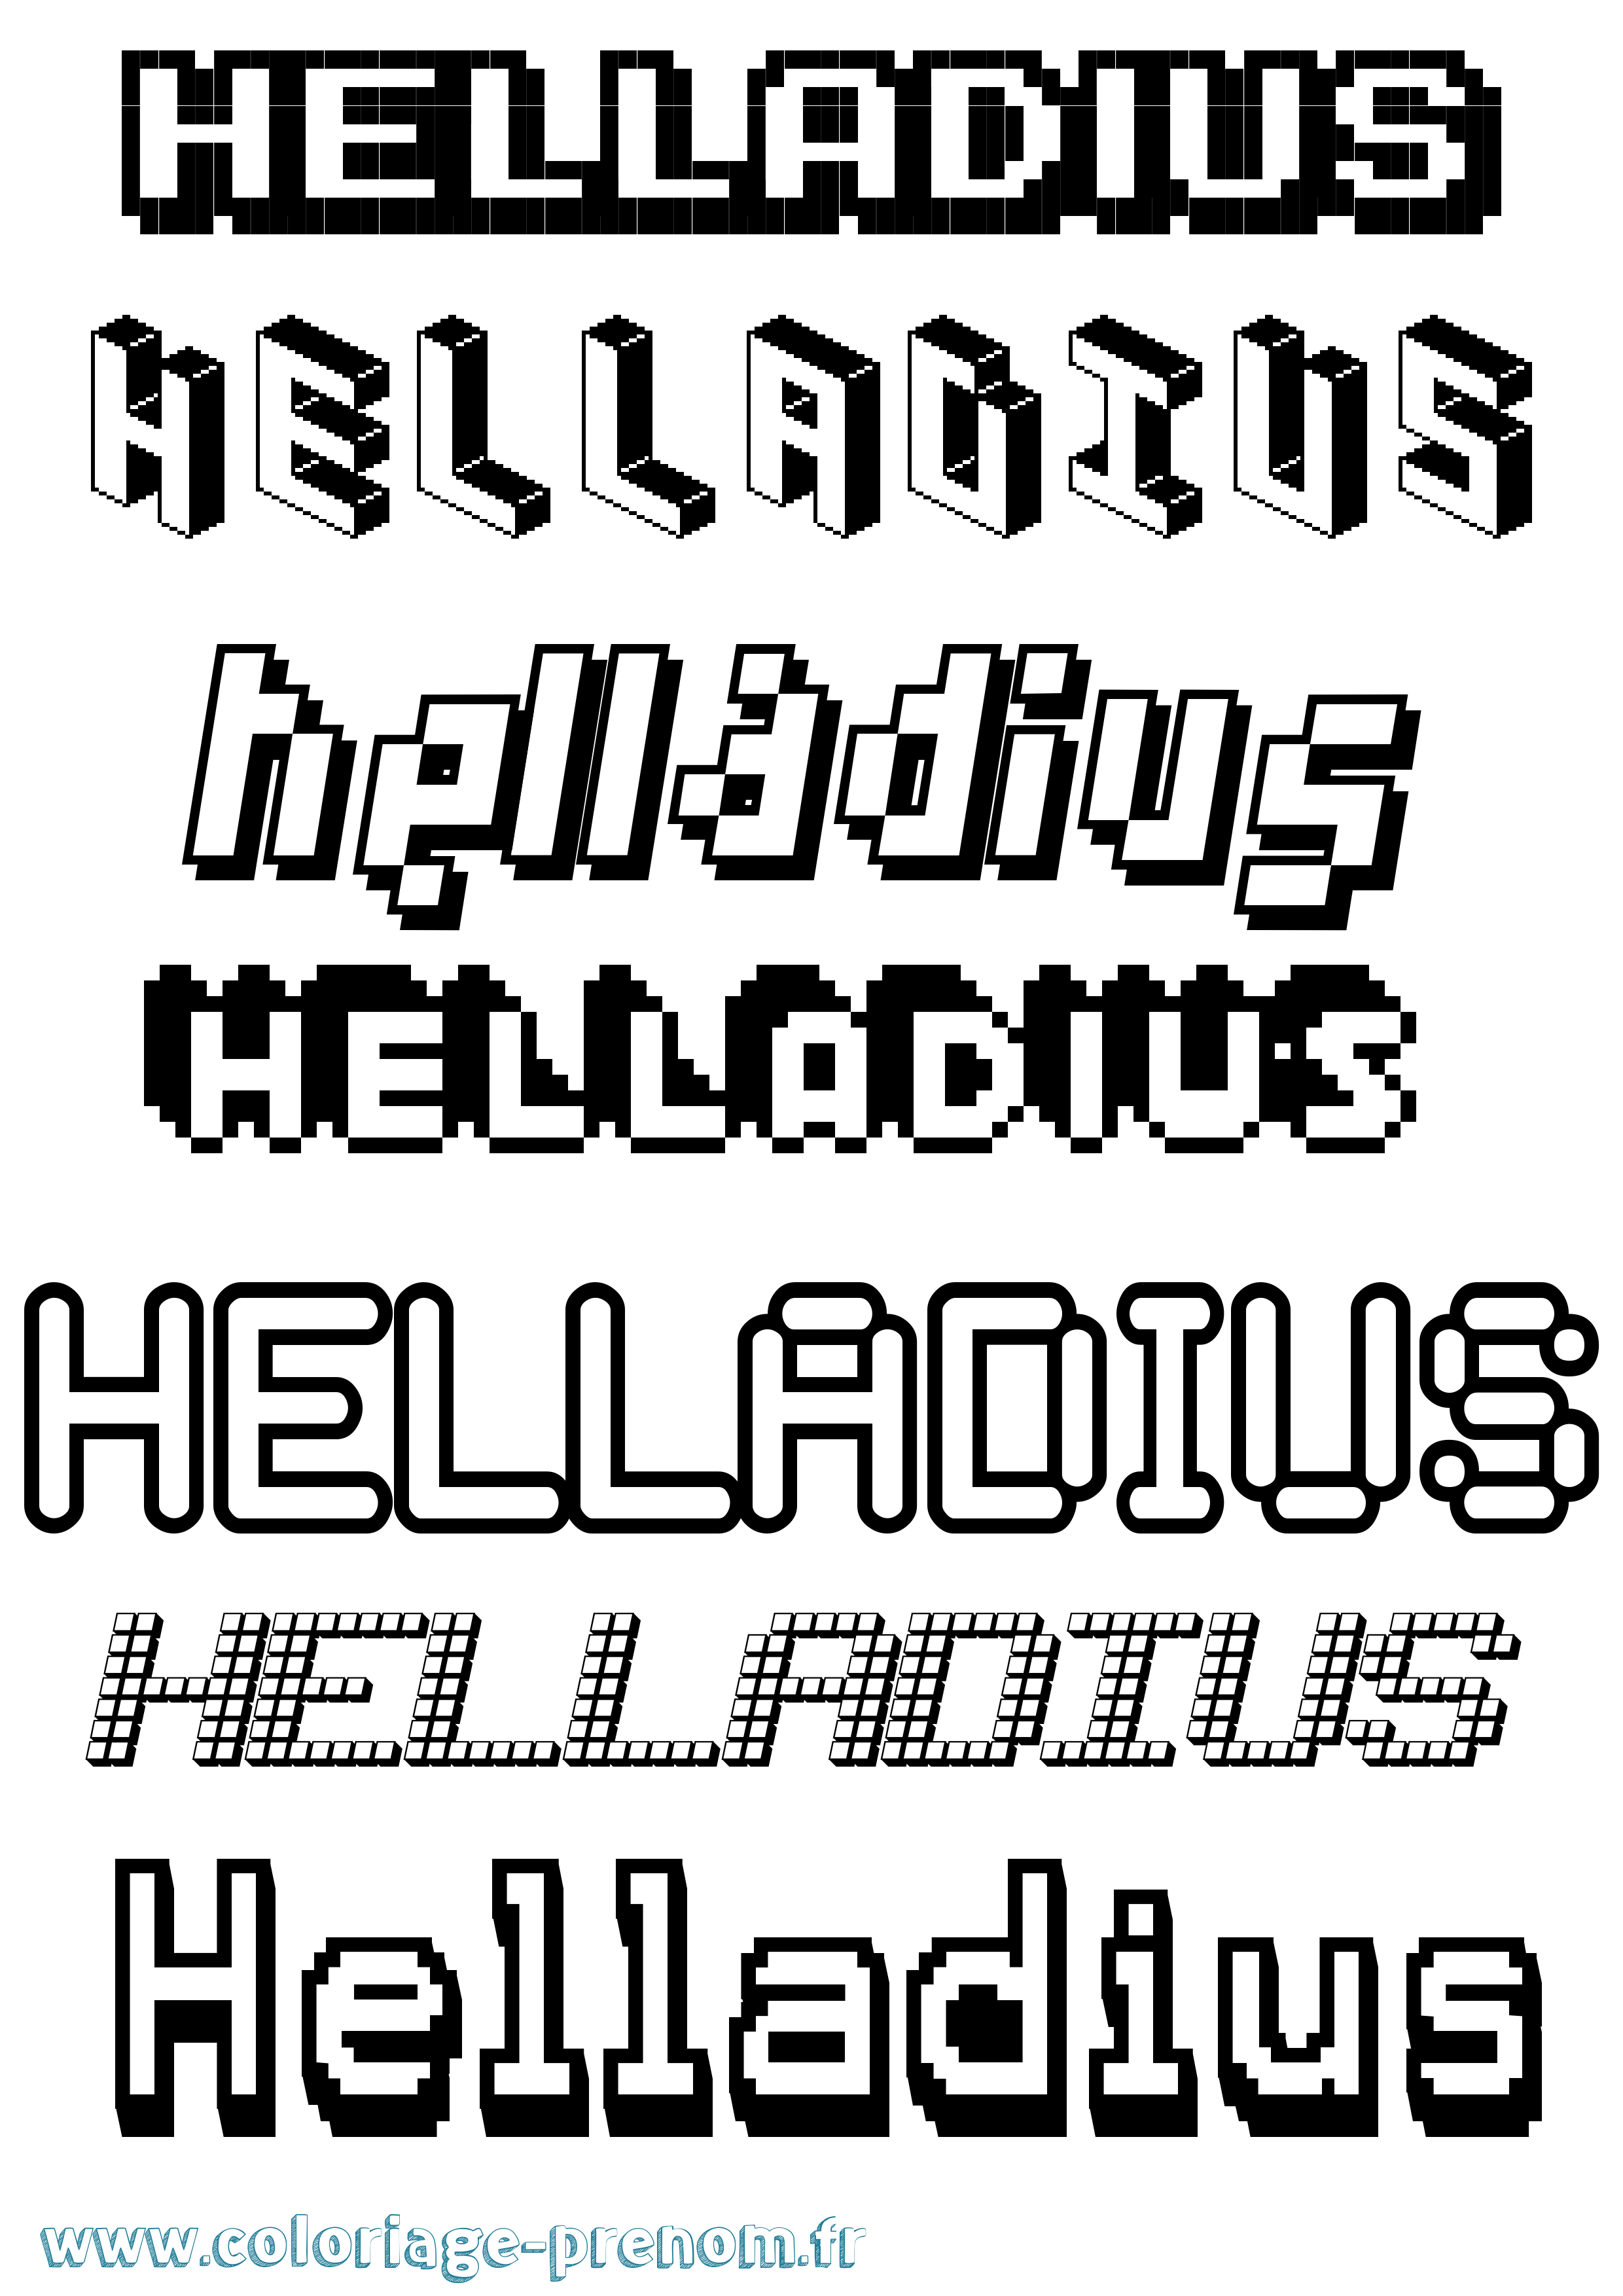 Coloriage prénom Helladius Pixel